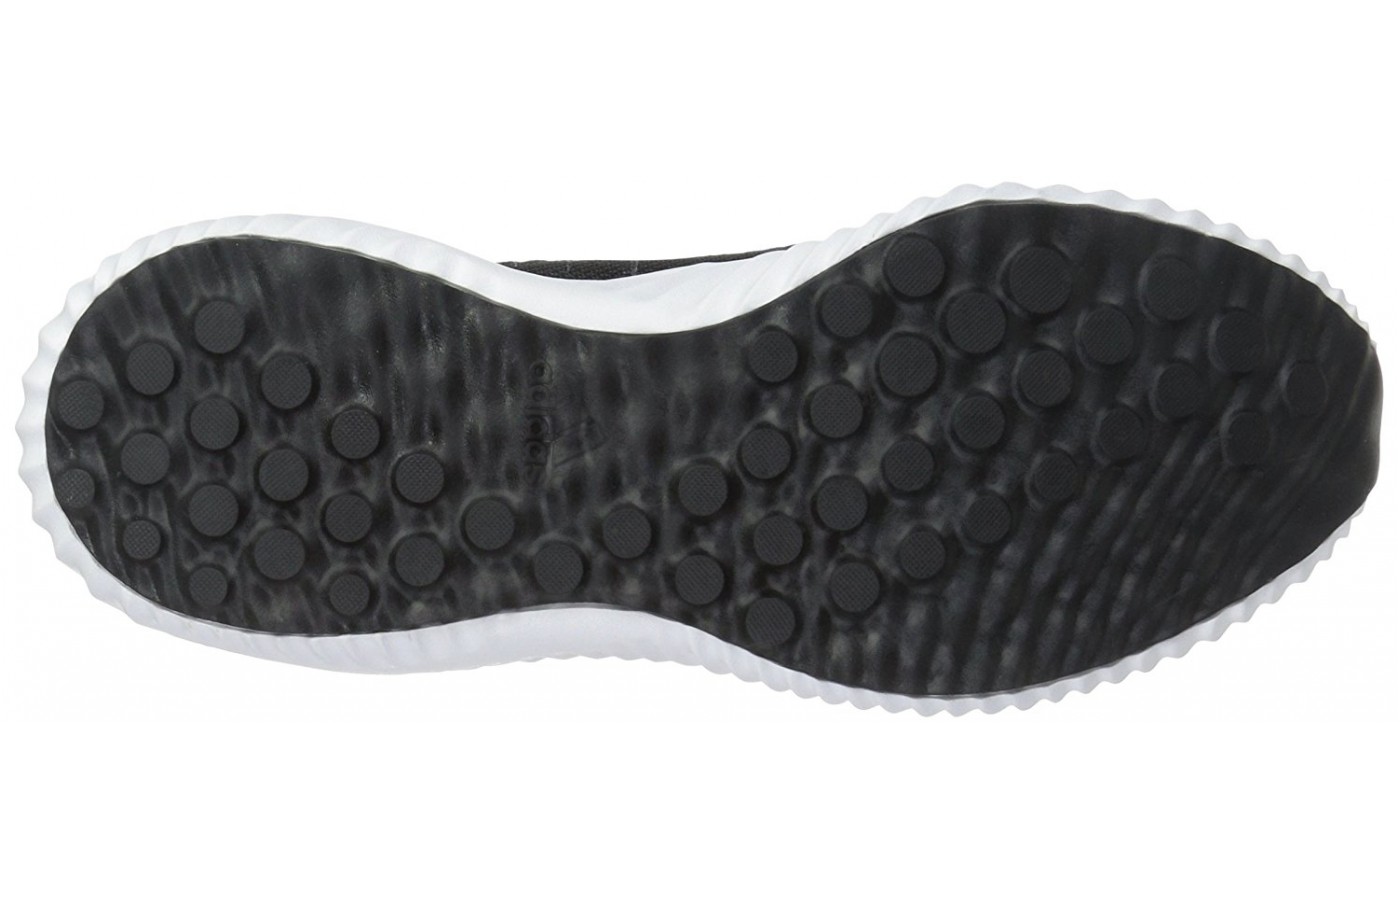 Adidas Alphabounce sole